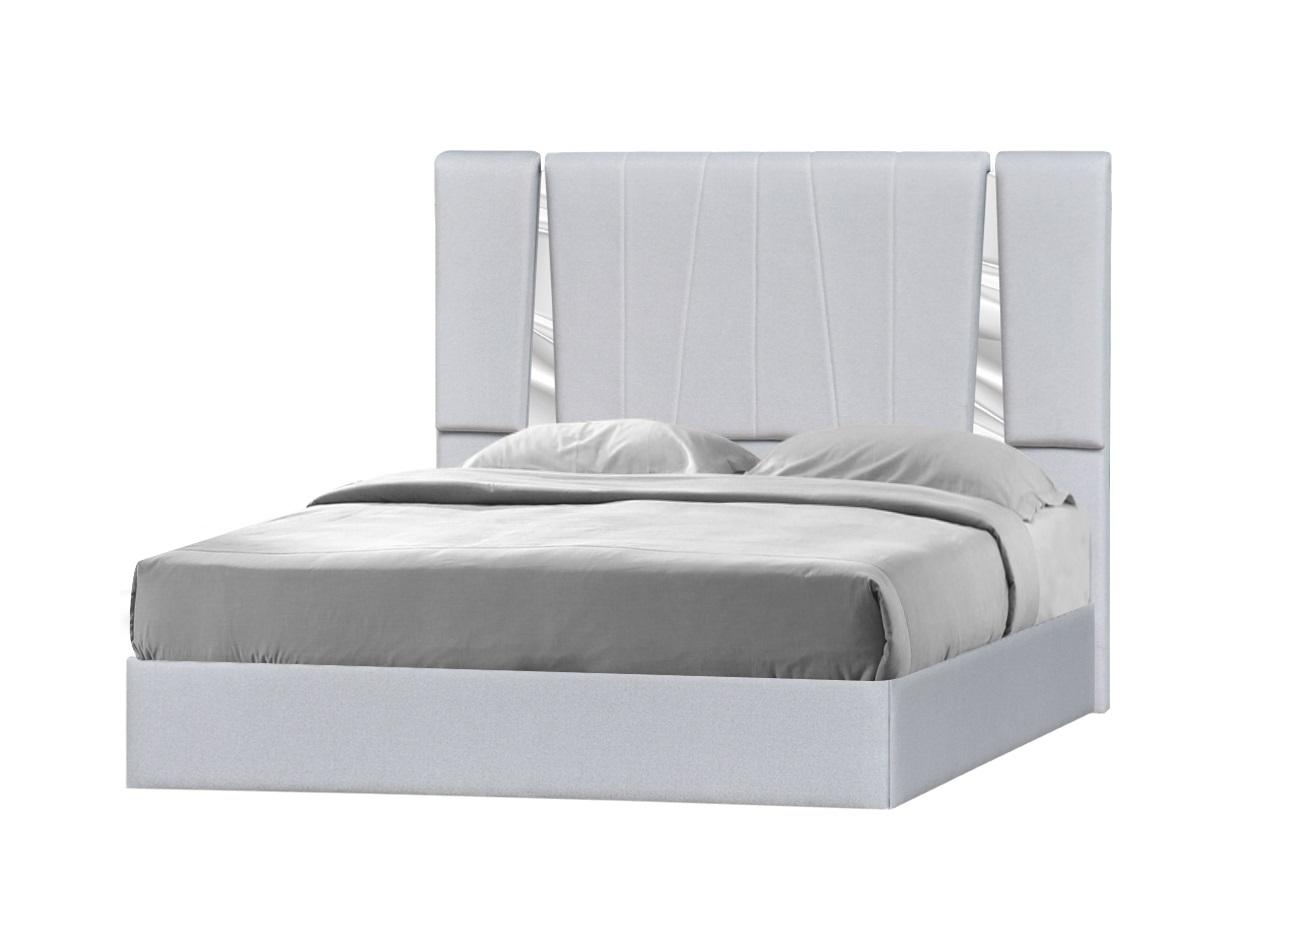 J&M Furniture Matisse Platform Bed